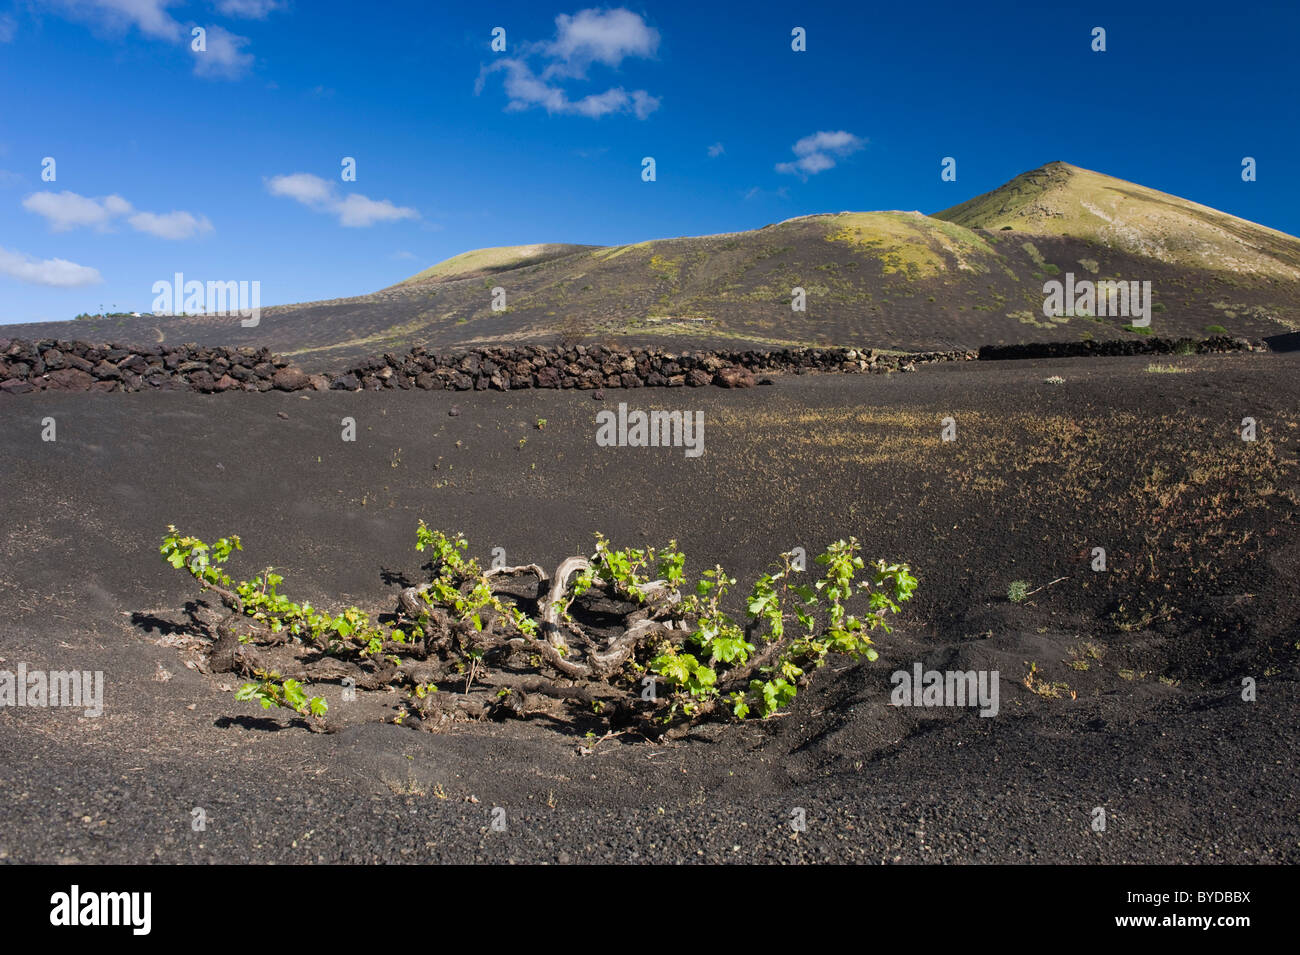 La viticulture, l'agriculture des zones arides sur la lave, paysage volcanique à La Geria, Lanzarote, Canary Islands, Spain, Europe Banque D'Images